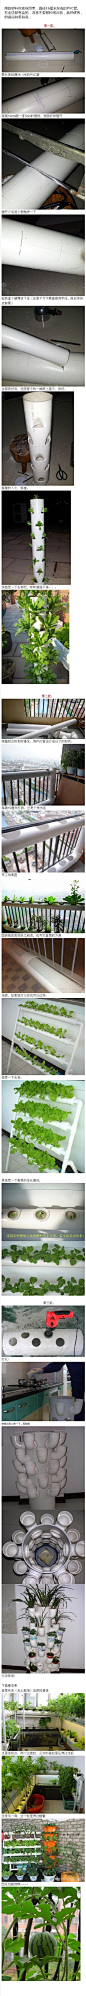 用PVC管在阳台种蔬菜